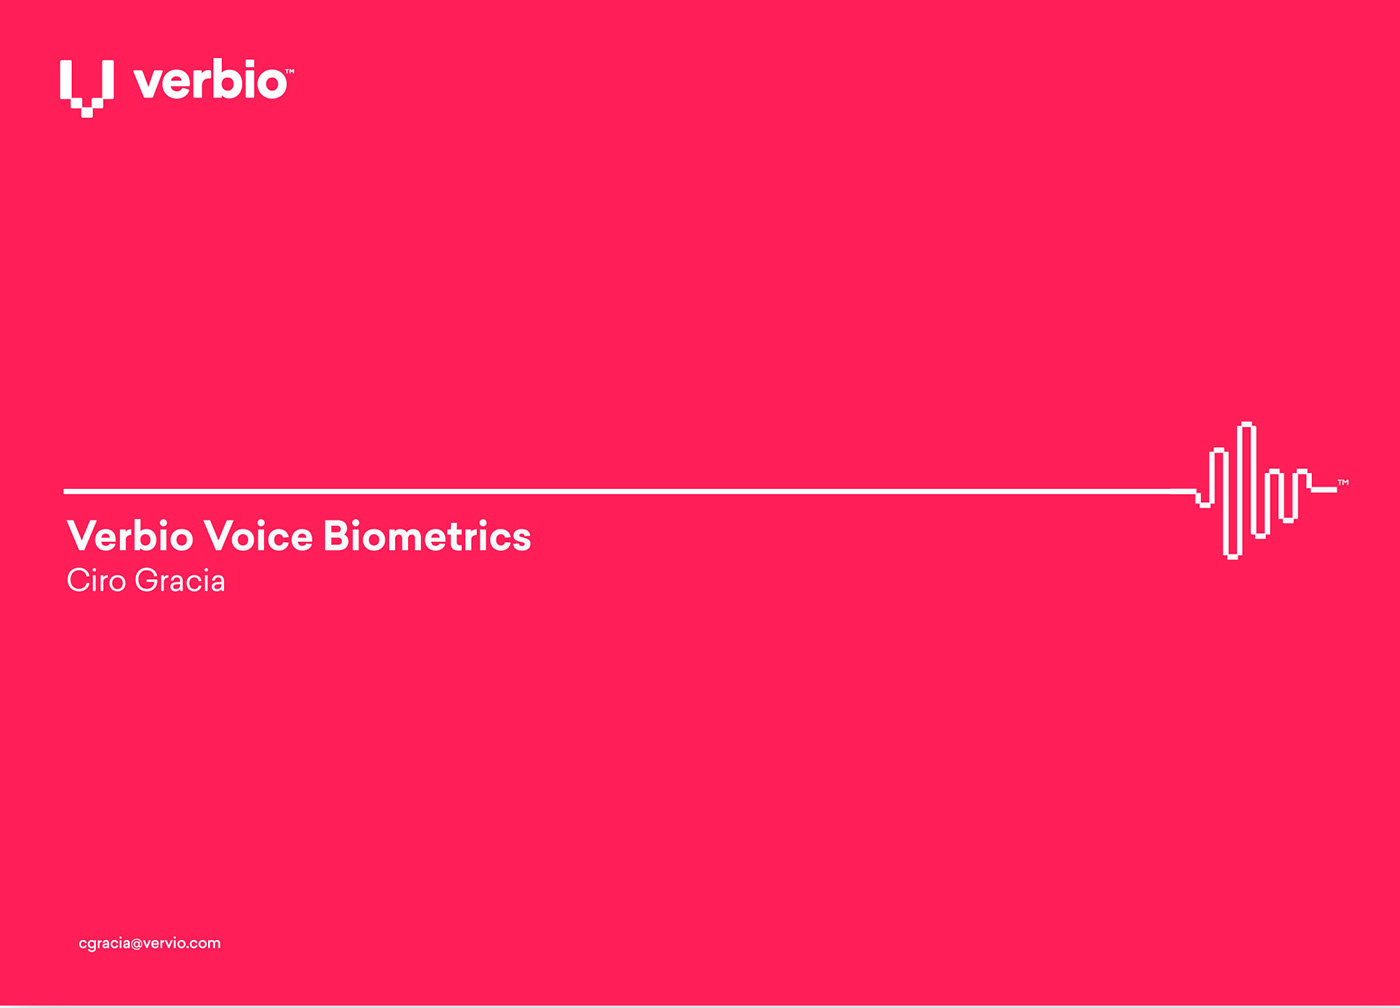 语音AI科技公司Verbio视觉形象和网页设计